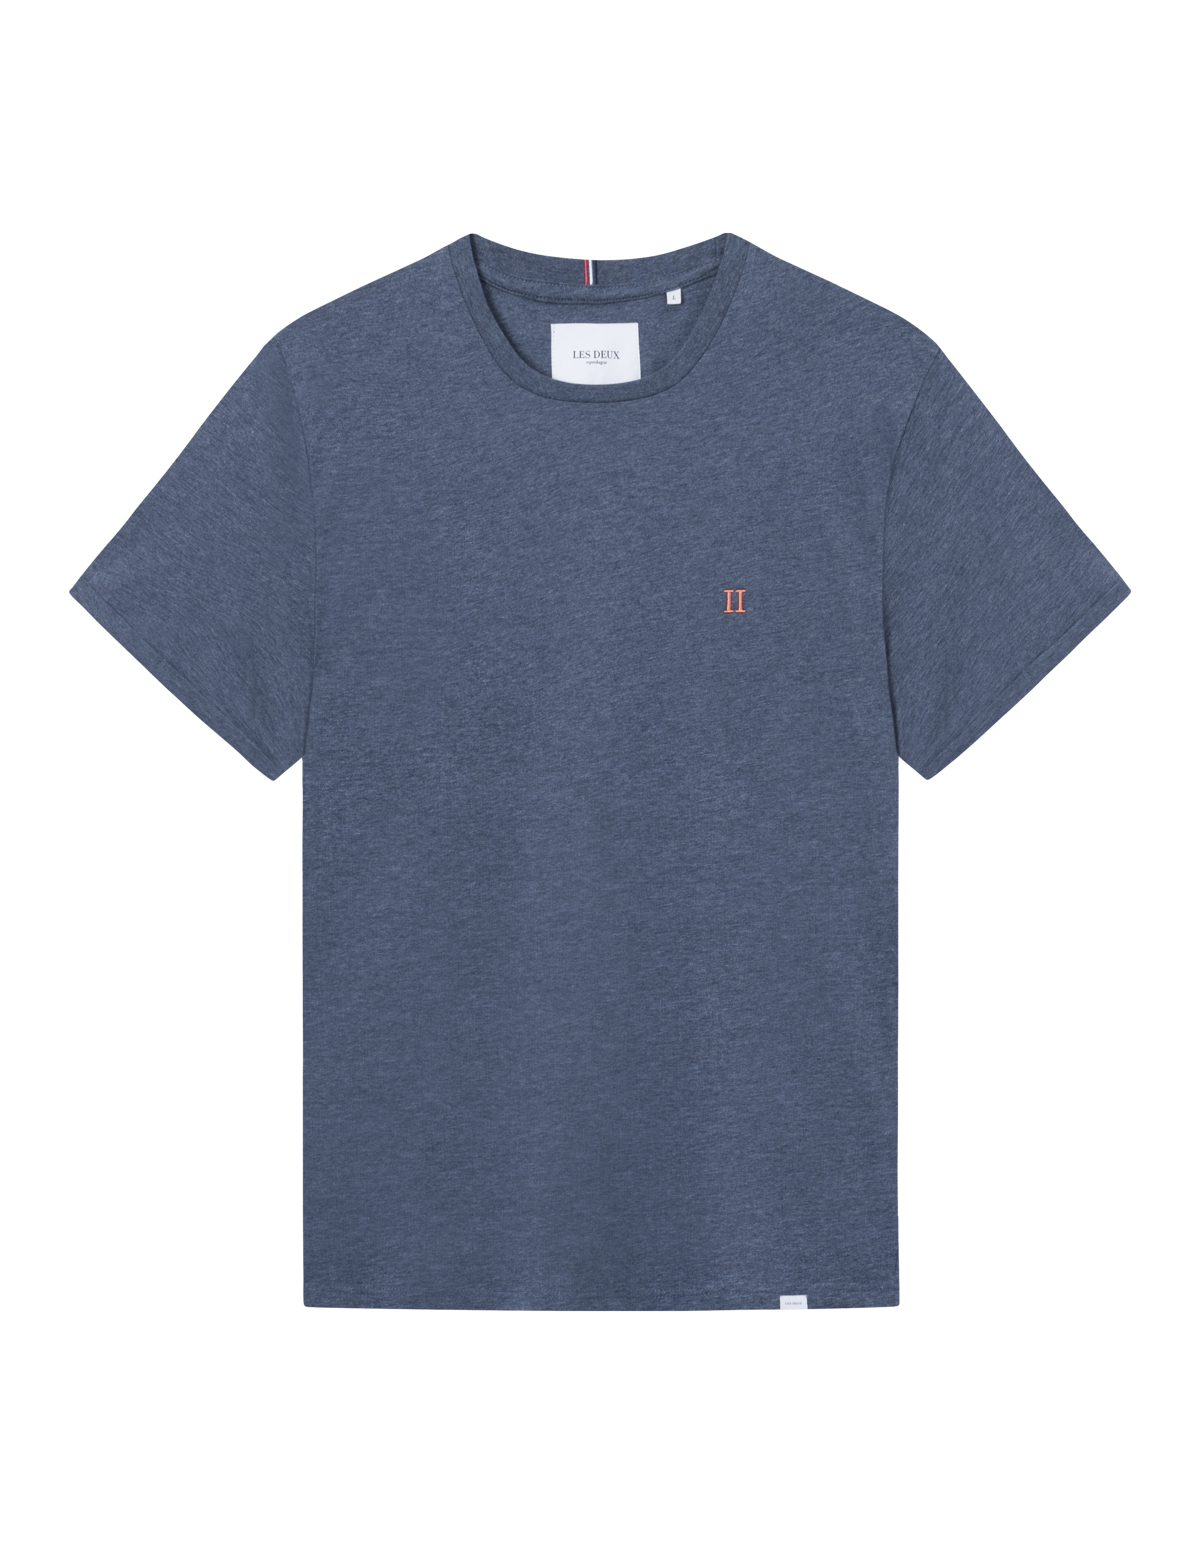 Nørregaard T-shirt, India Ink Melange/Orange, XXL